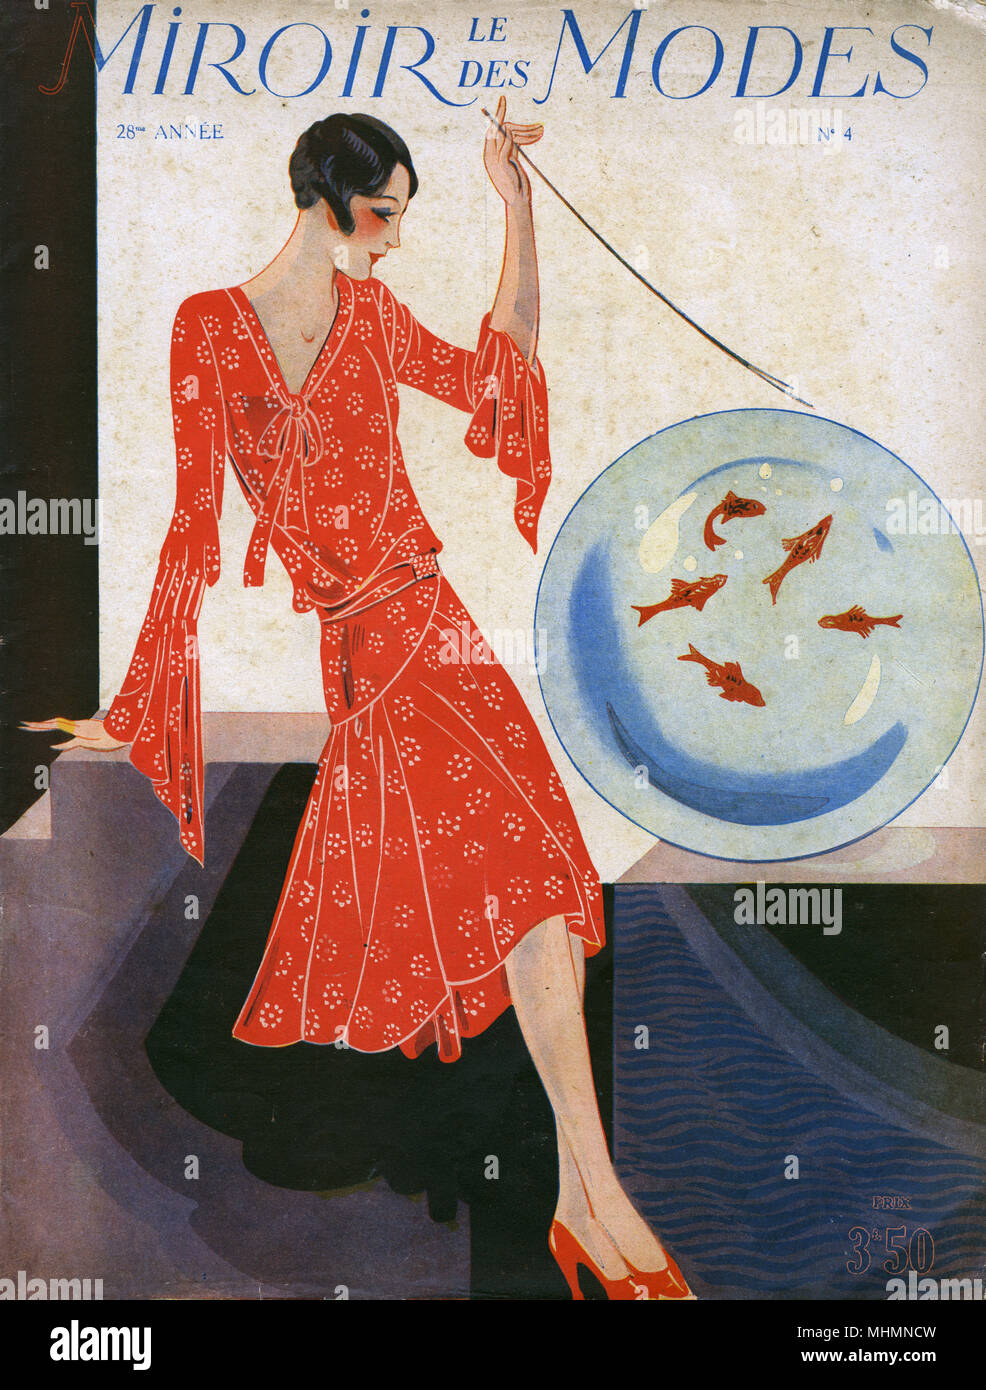 Portada de revista de moda francesa, Le miroir des Modes con una mujer en un vestido rojo drapeado telas día junto con una esfera de vidrio o recipiente de goldfish. Fecha: c.1920 Foto de stock